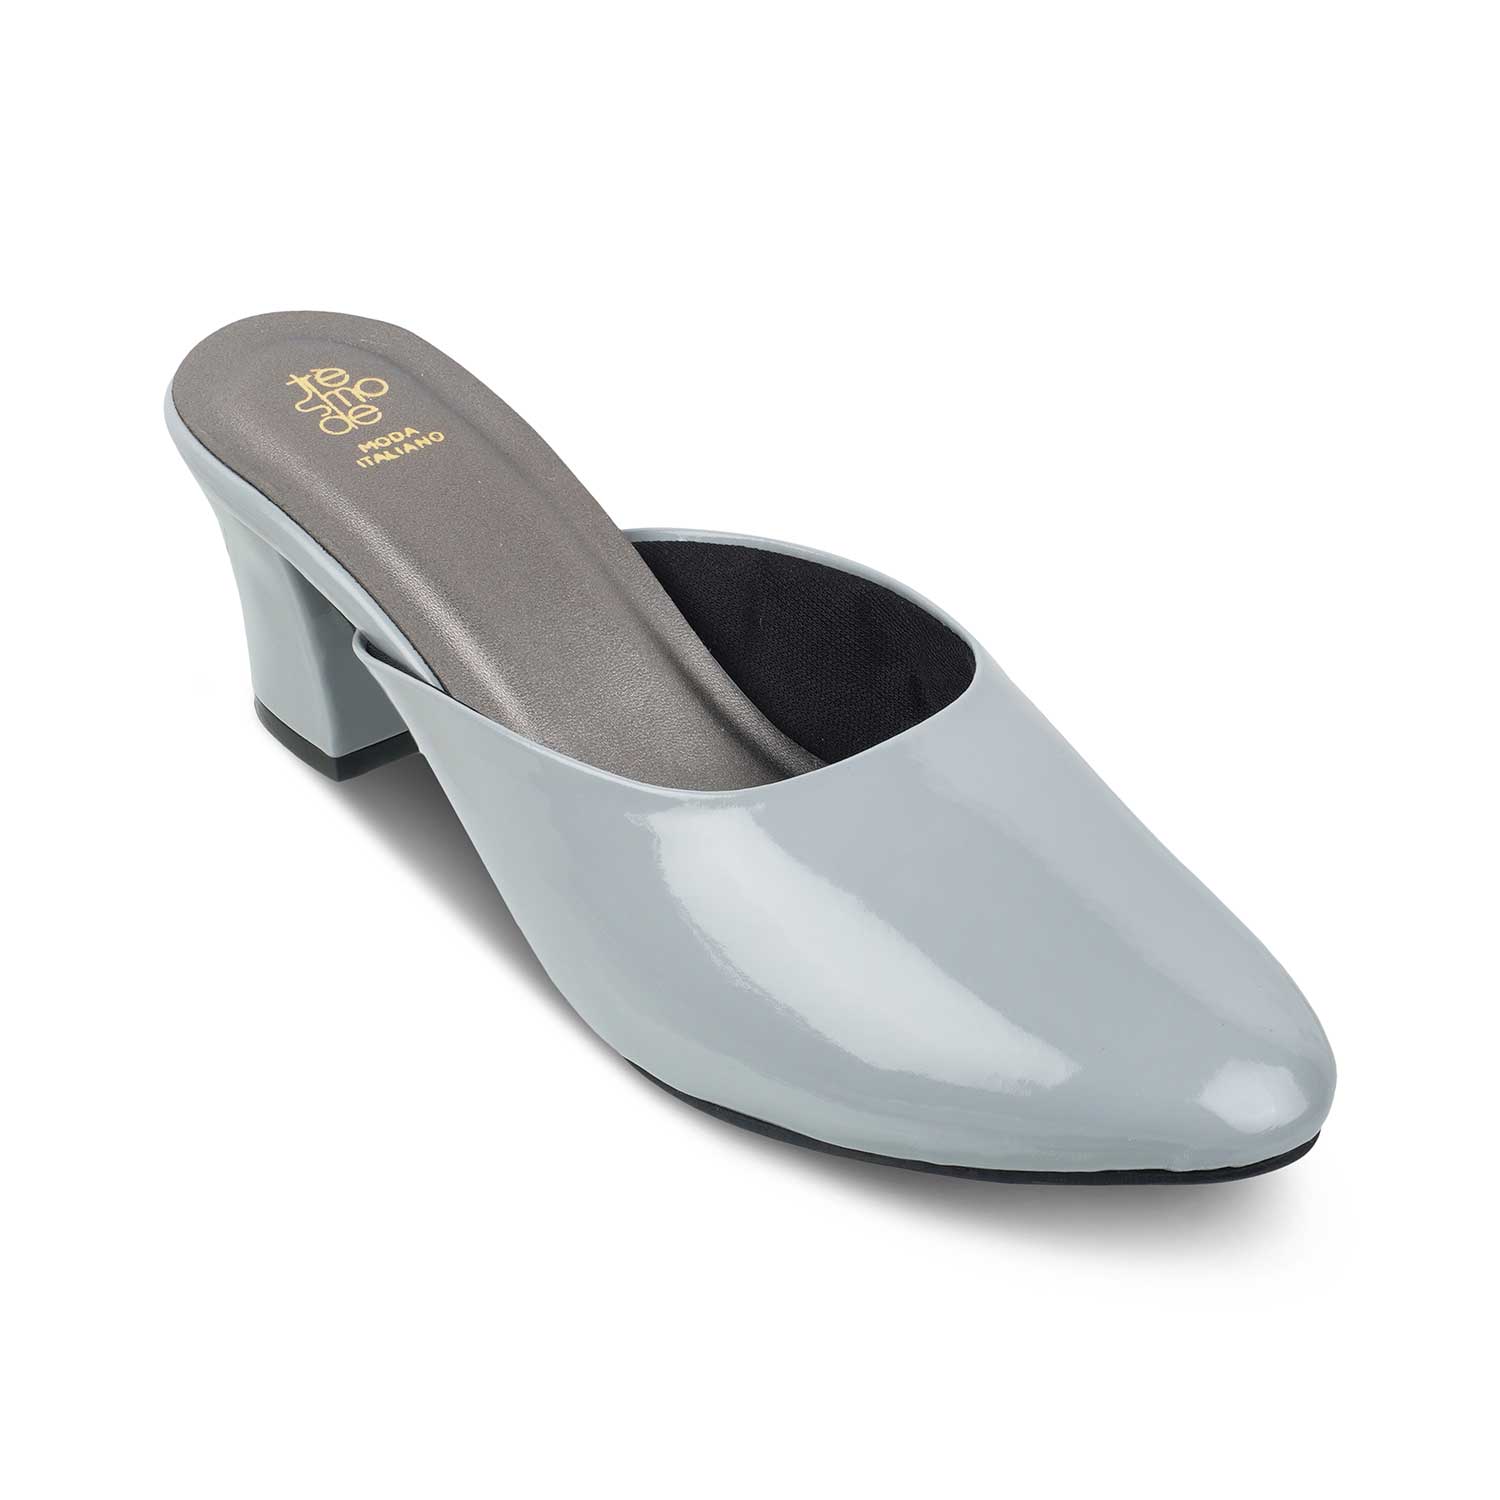 The Carbo Grey Women's Dress Block Heel Sandals Tresmode